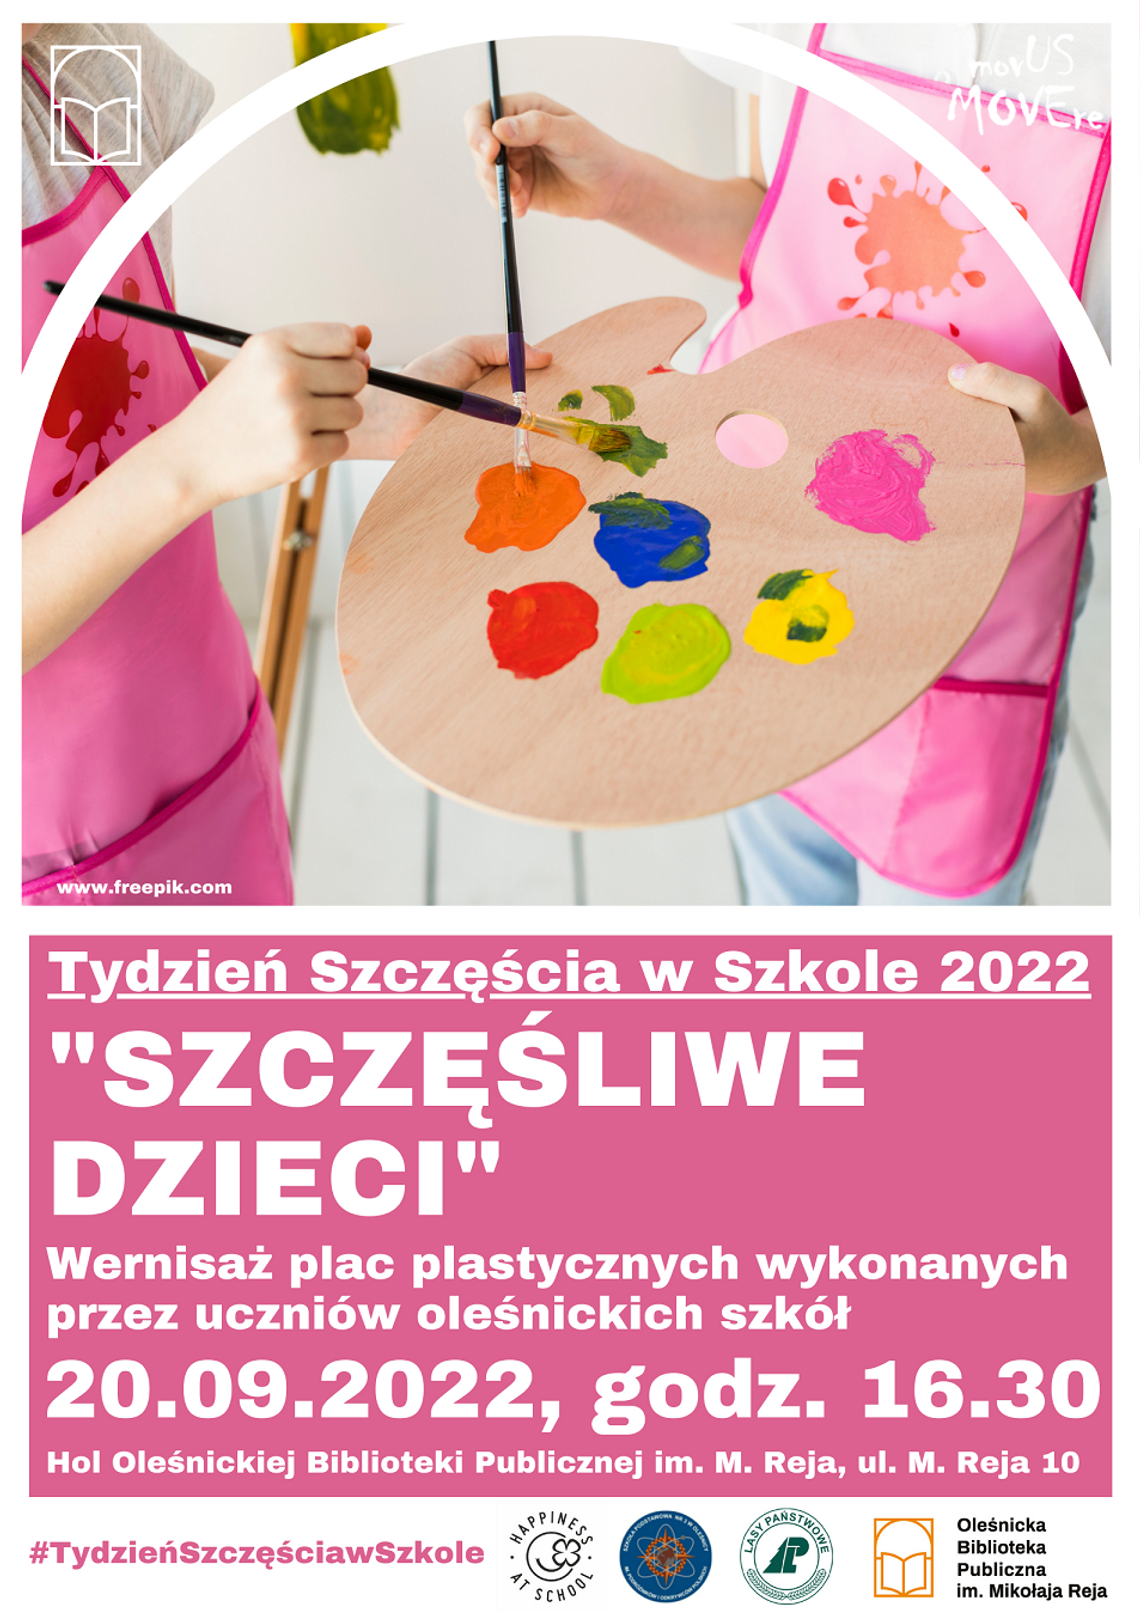 Tydzień Szczęścia w Szkole 2022 w Oleśnickiej Bibliotece Publicznej im. Mikołaja Reja